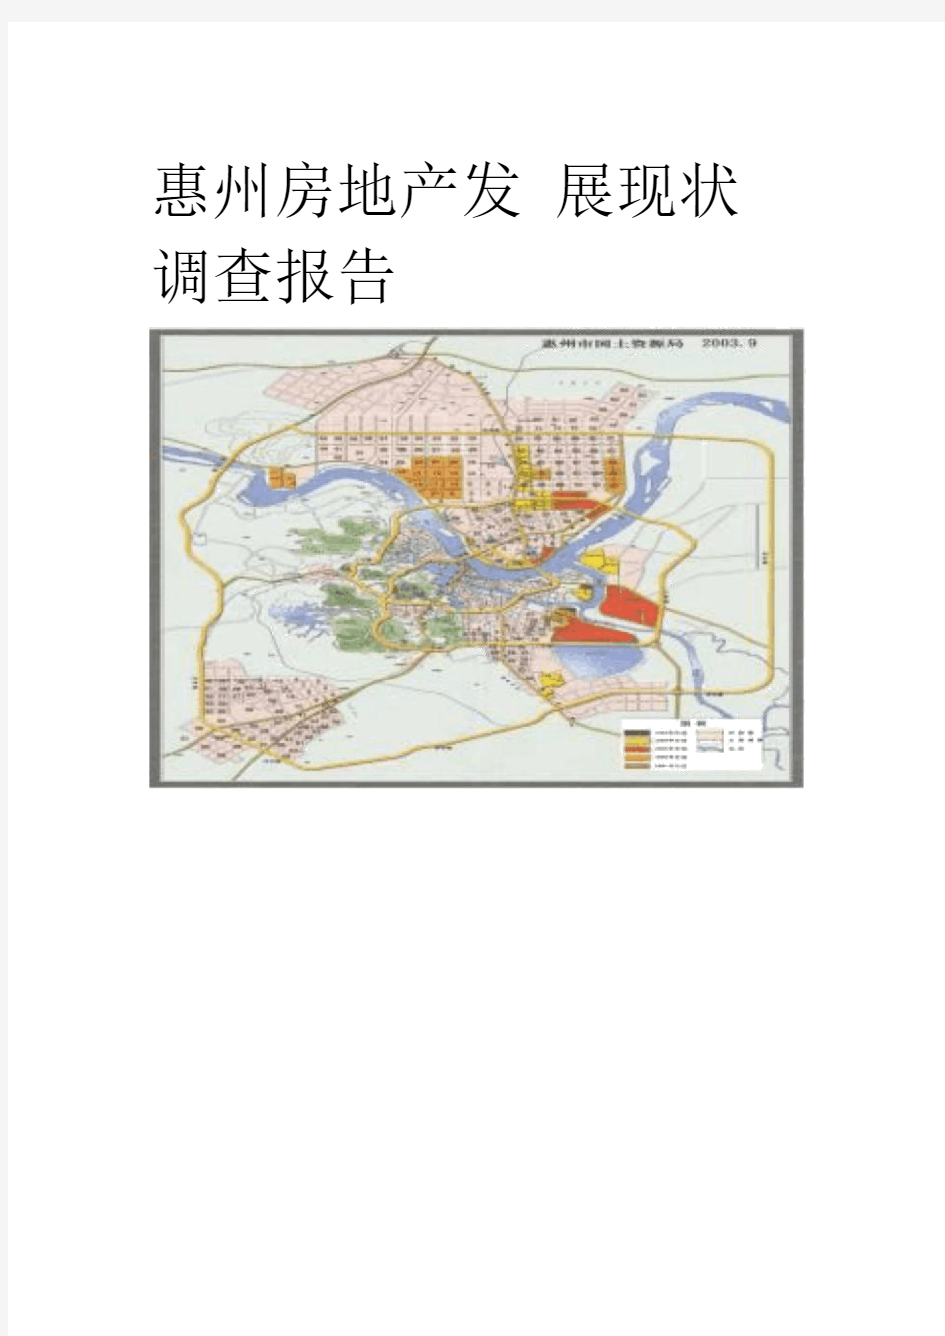 惠州房地产发展现状调查报告